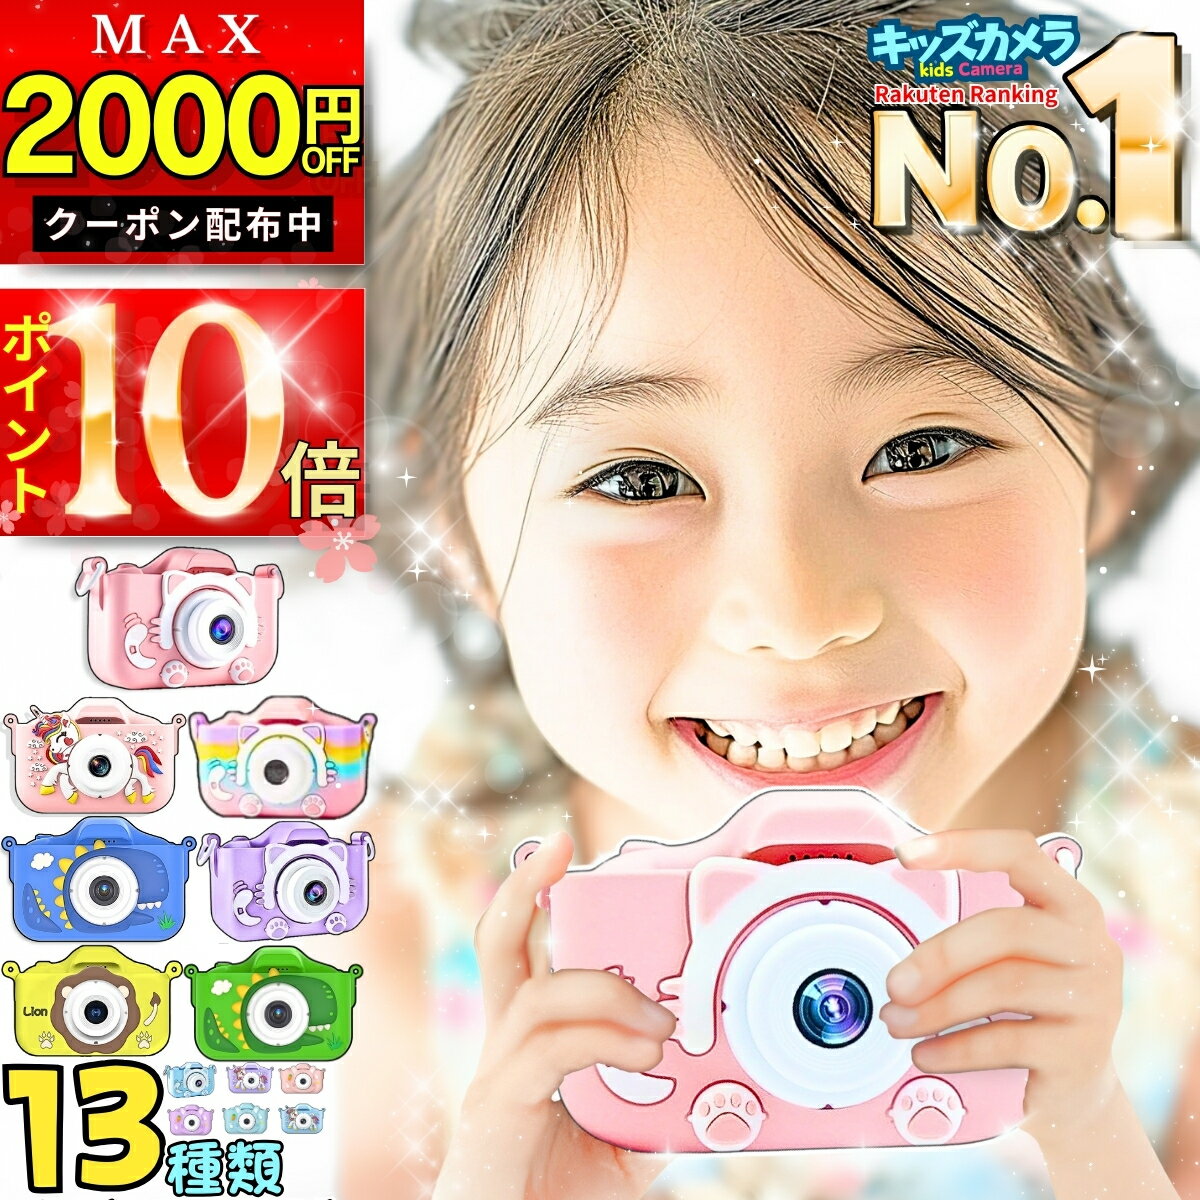 デジタルカメラ 子供用 4800万画素 トイカメラ 3.0インチ大画面 キッズカメラ 16倍ズーム CMOSセンサー搭載 子どもカメラ HD 1080P録画 軽量 日本語説明書 キッズデジカメ 初心者 子供 学生 誕生日 クリスマス プレゼント ギフ